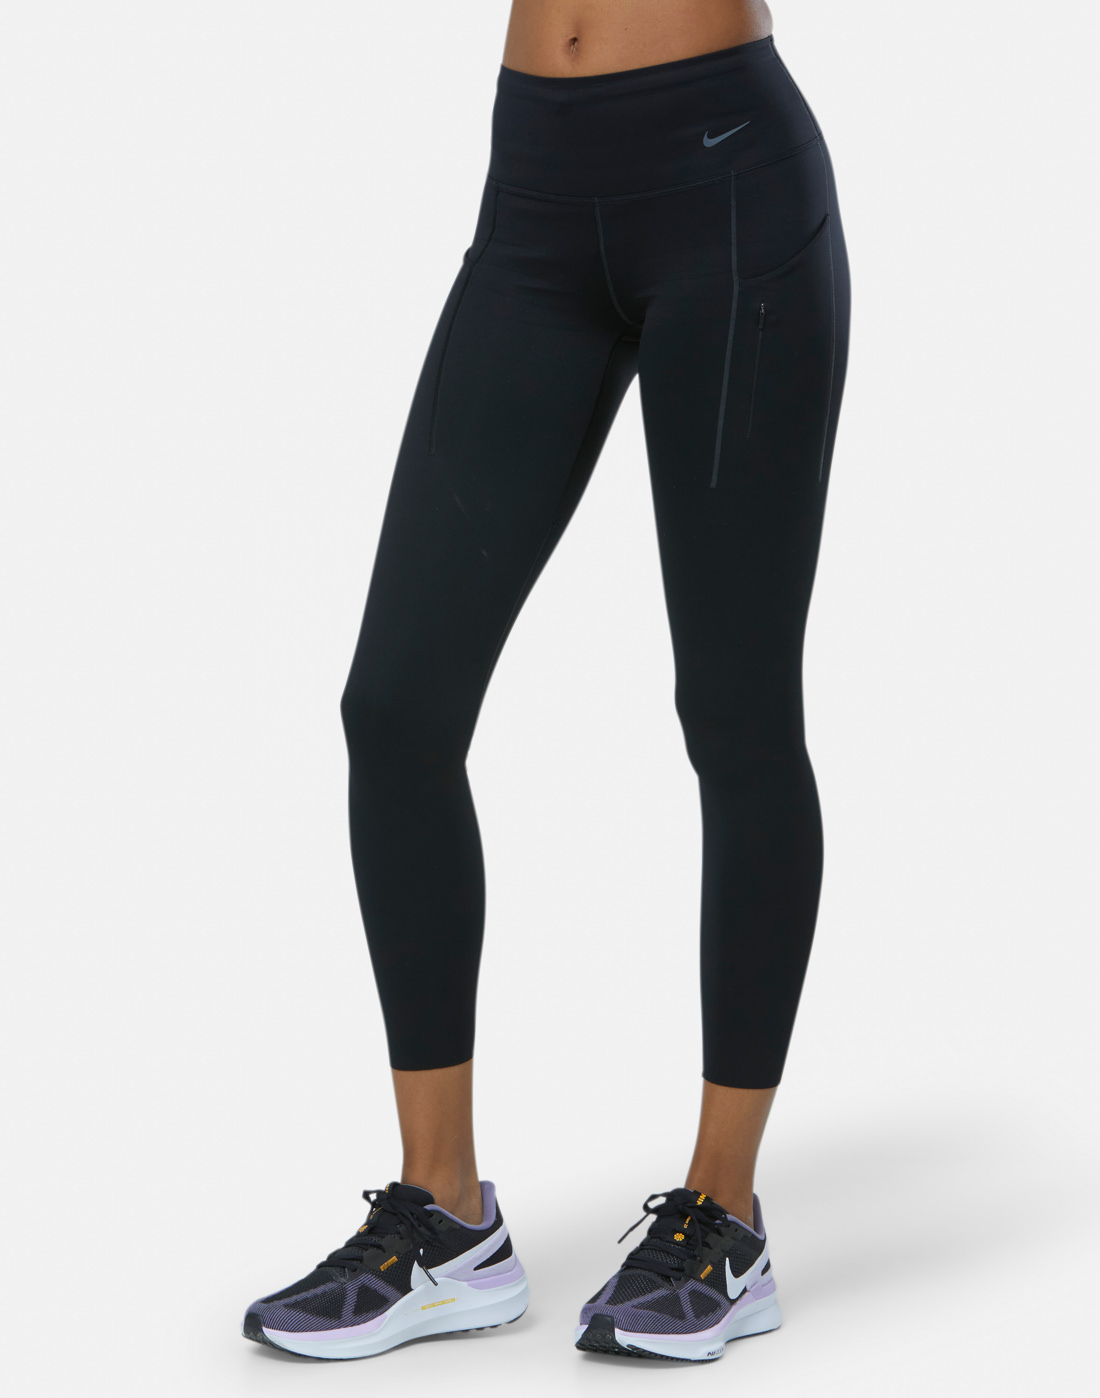 Nike Womens Go 7/8 Leggings - Black